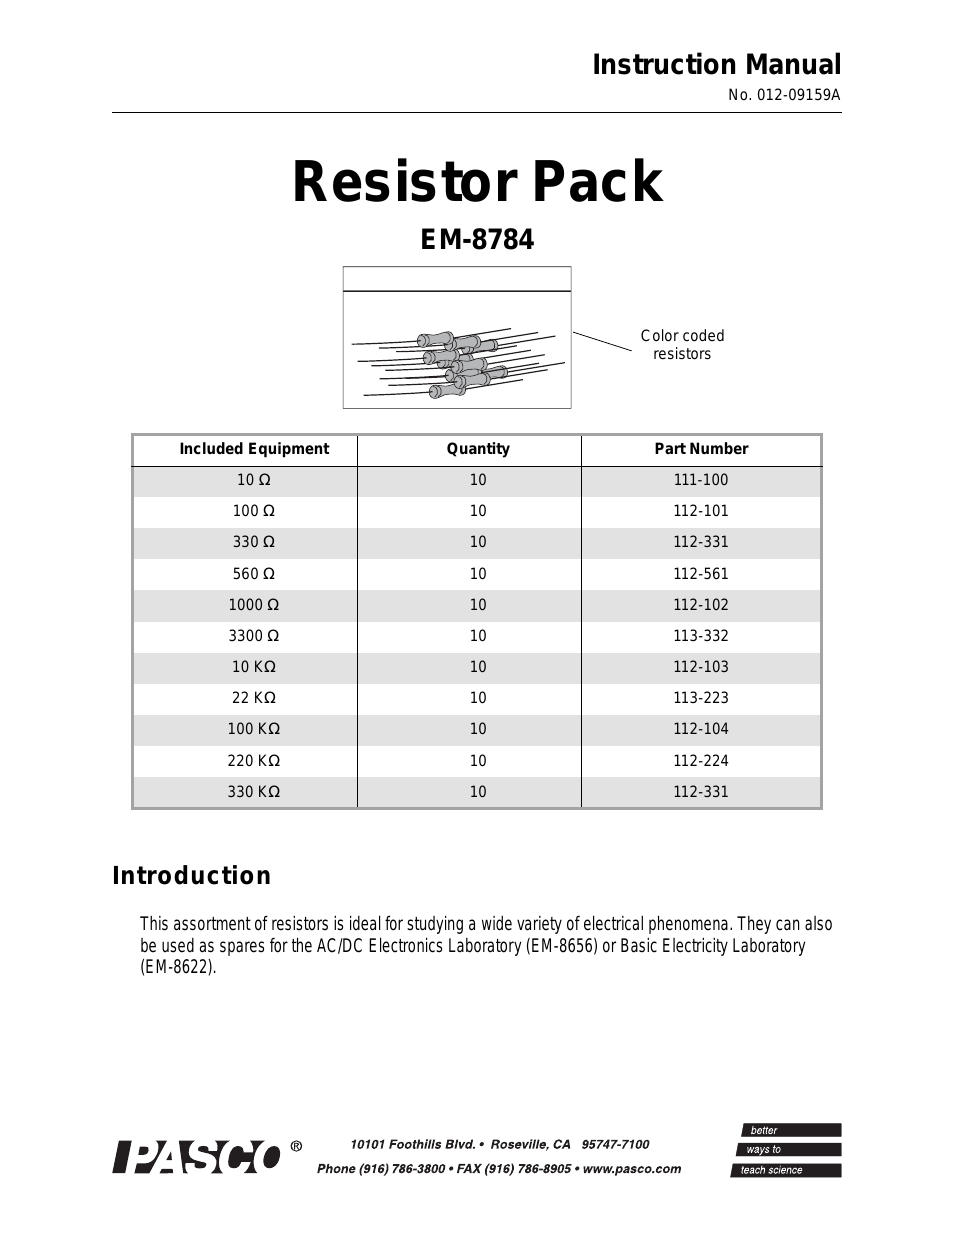 EM-8784 Resistor Pack